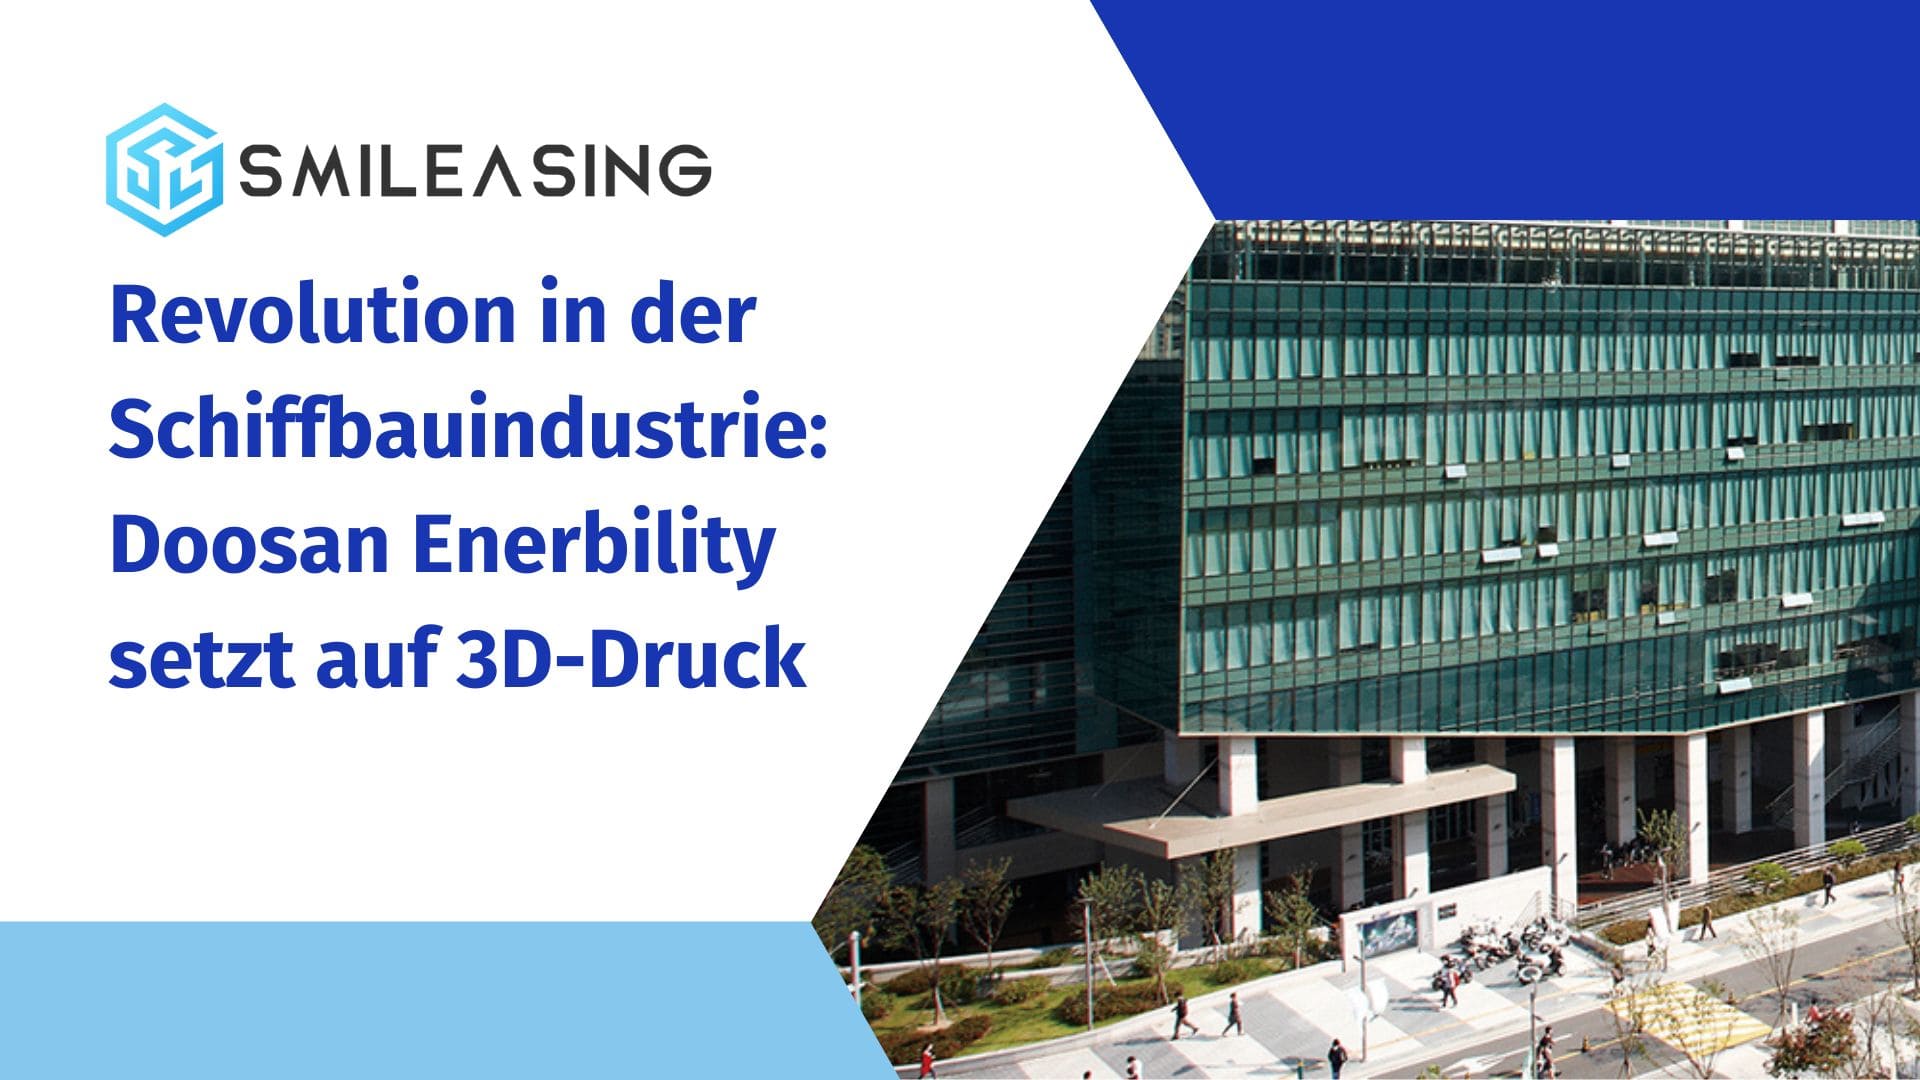 Revolution in der Schiffbauindustrie Doosan Enerbility setzt auf 3D-Druck